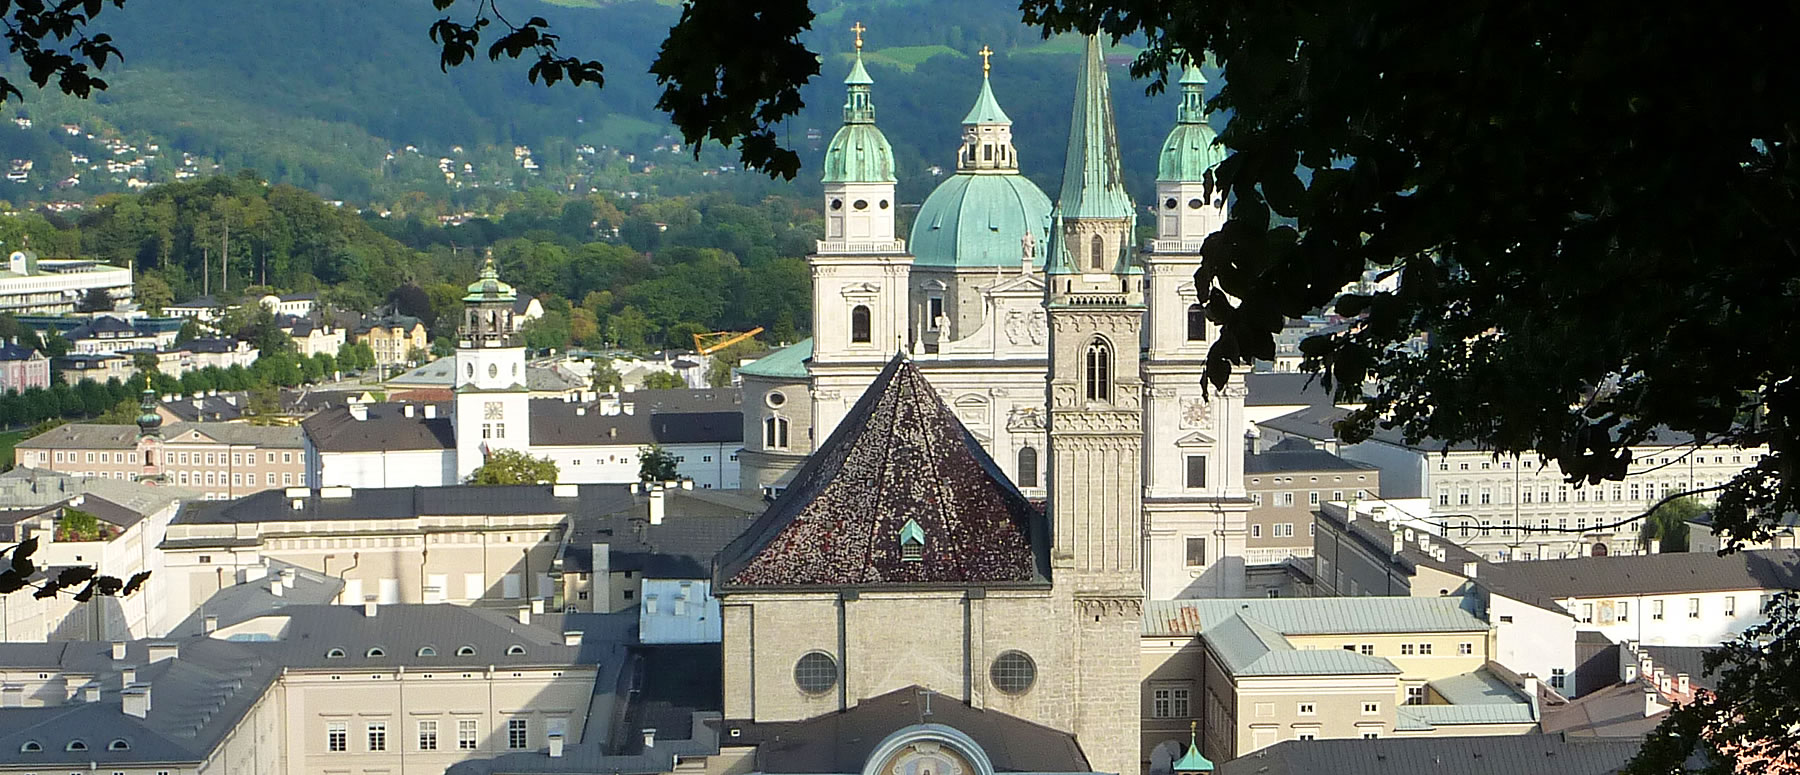 Blick auf das sommerliche Salzburg